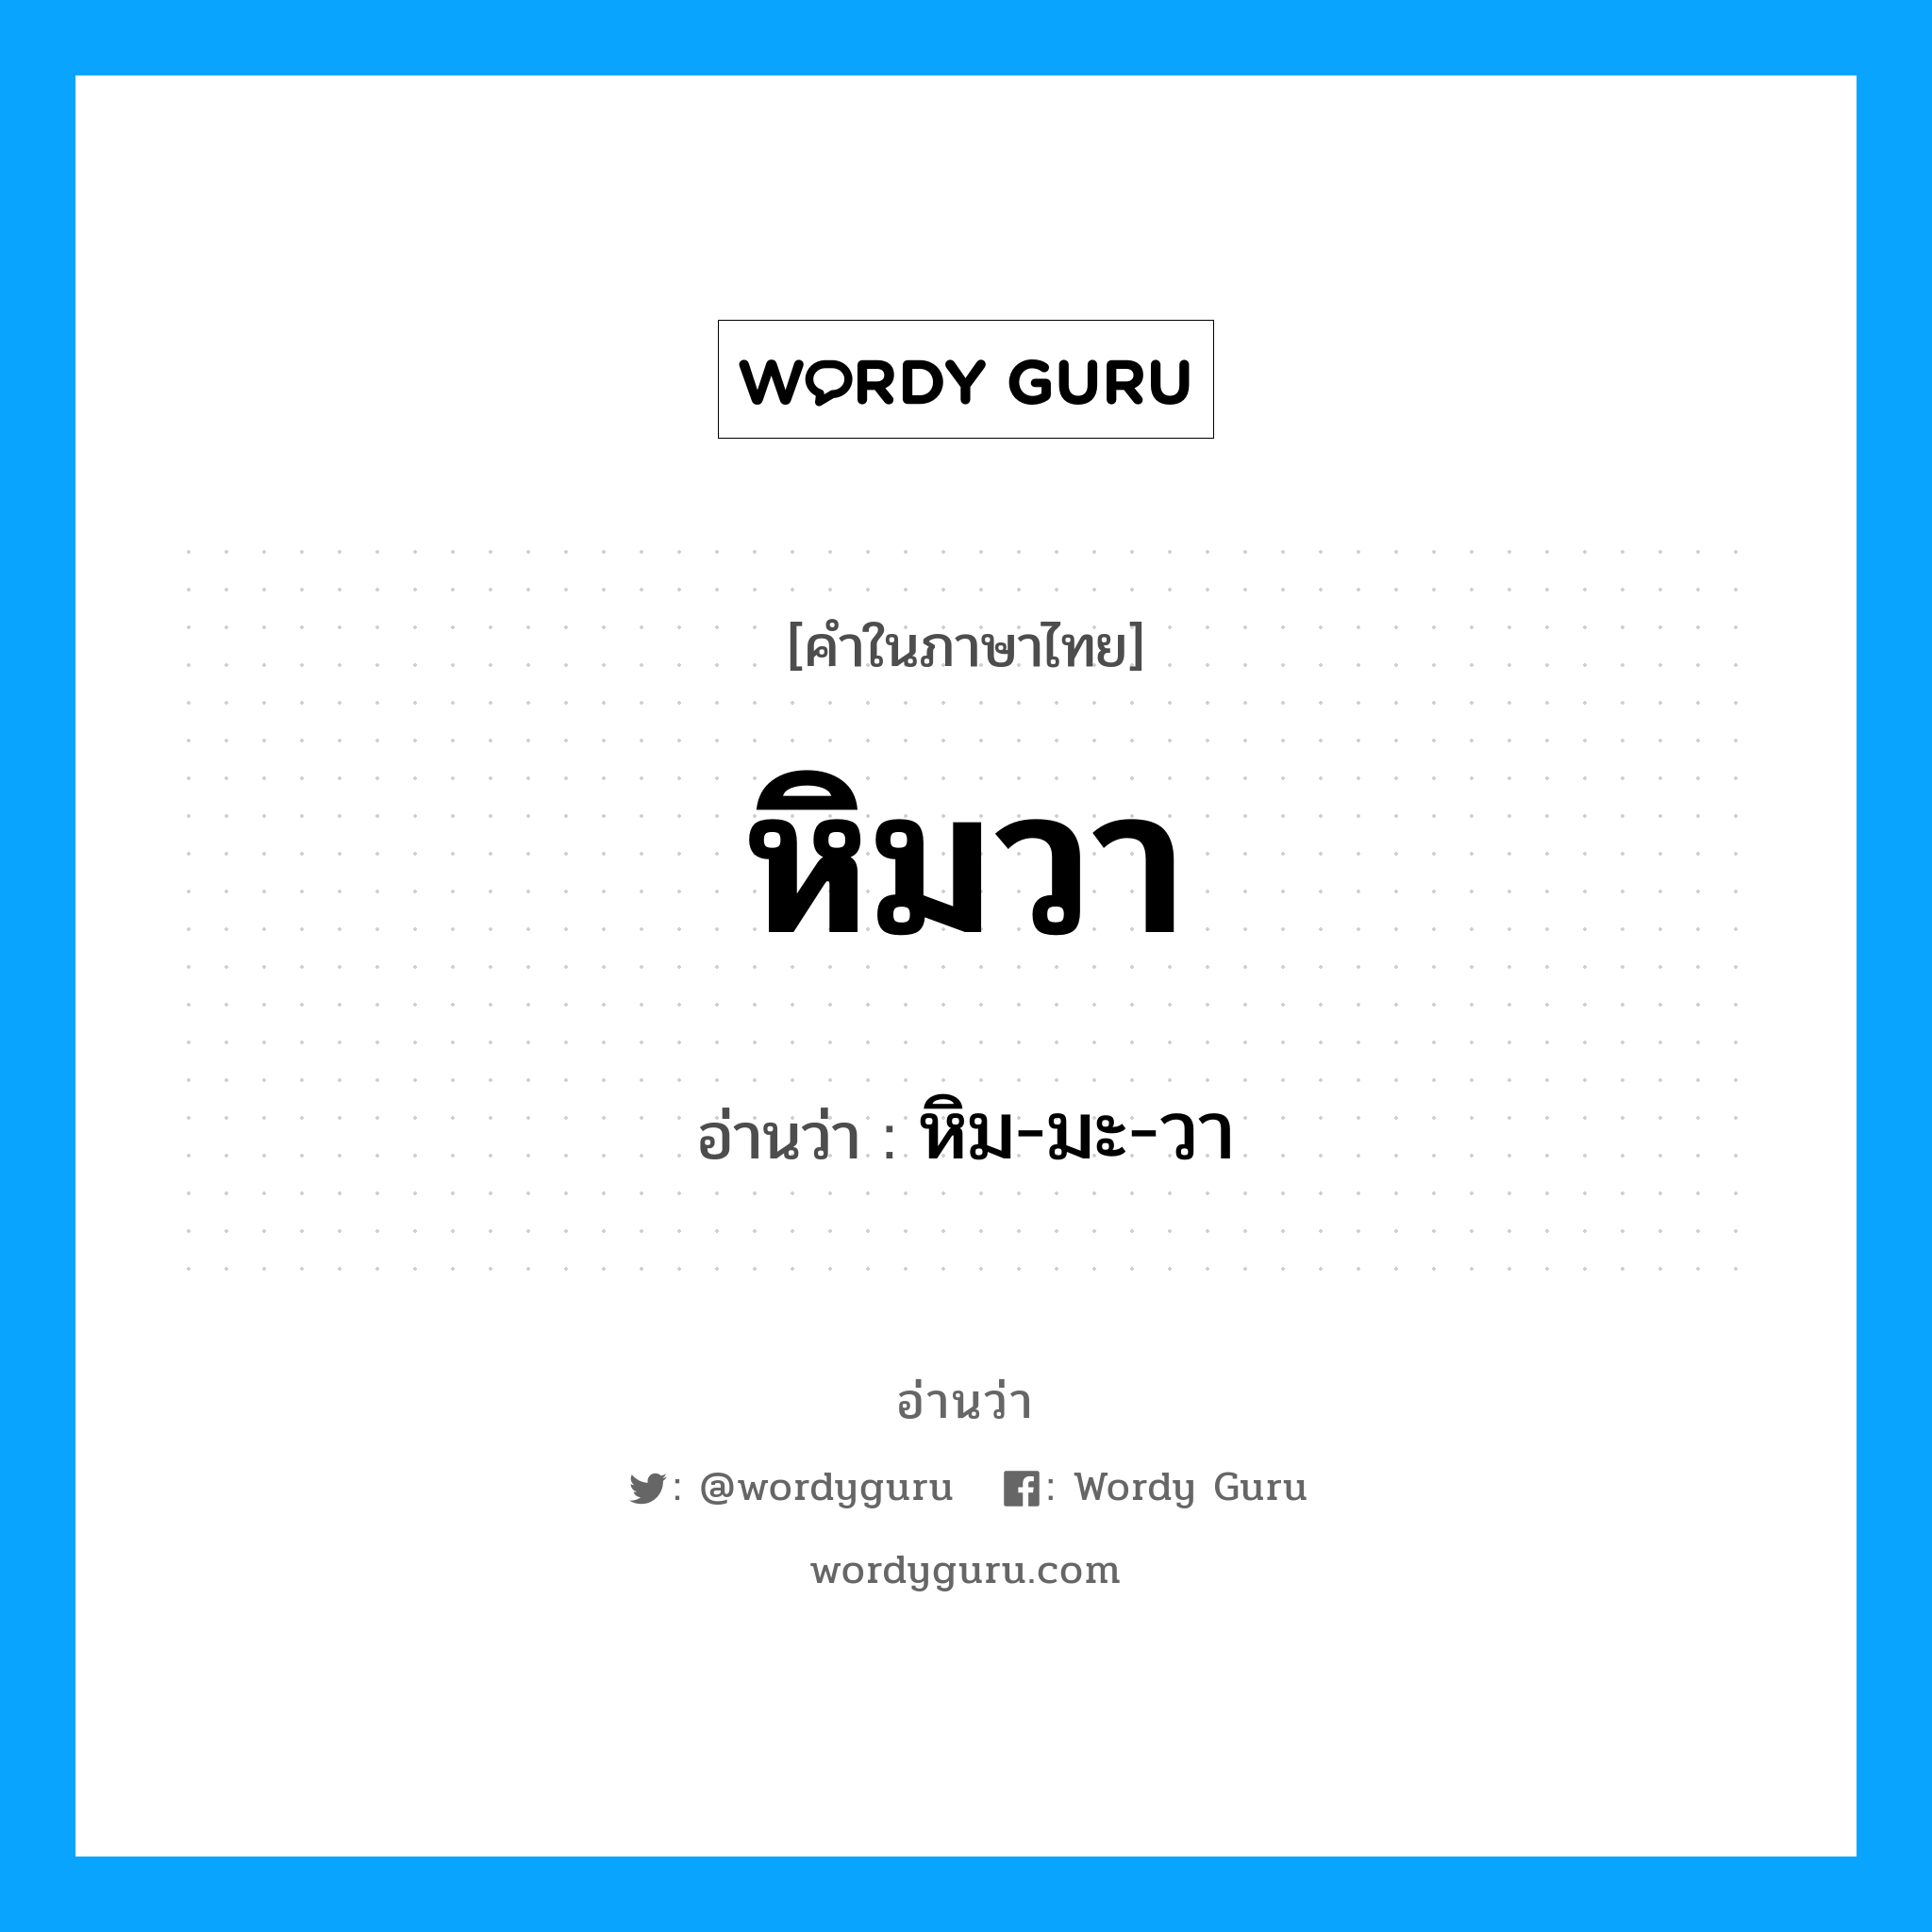 หิมวา อ่านว่า?, คำในภาษาไทย หิมวา อ่านว่า หิม-มะ-วา